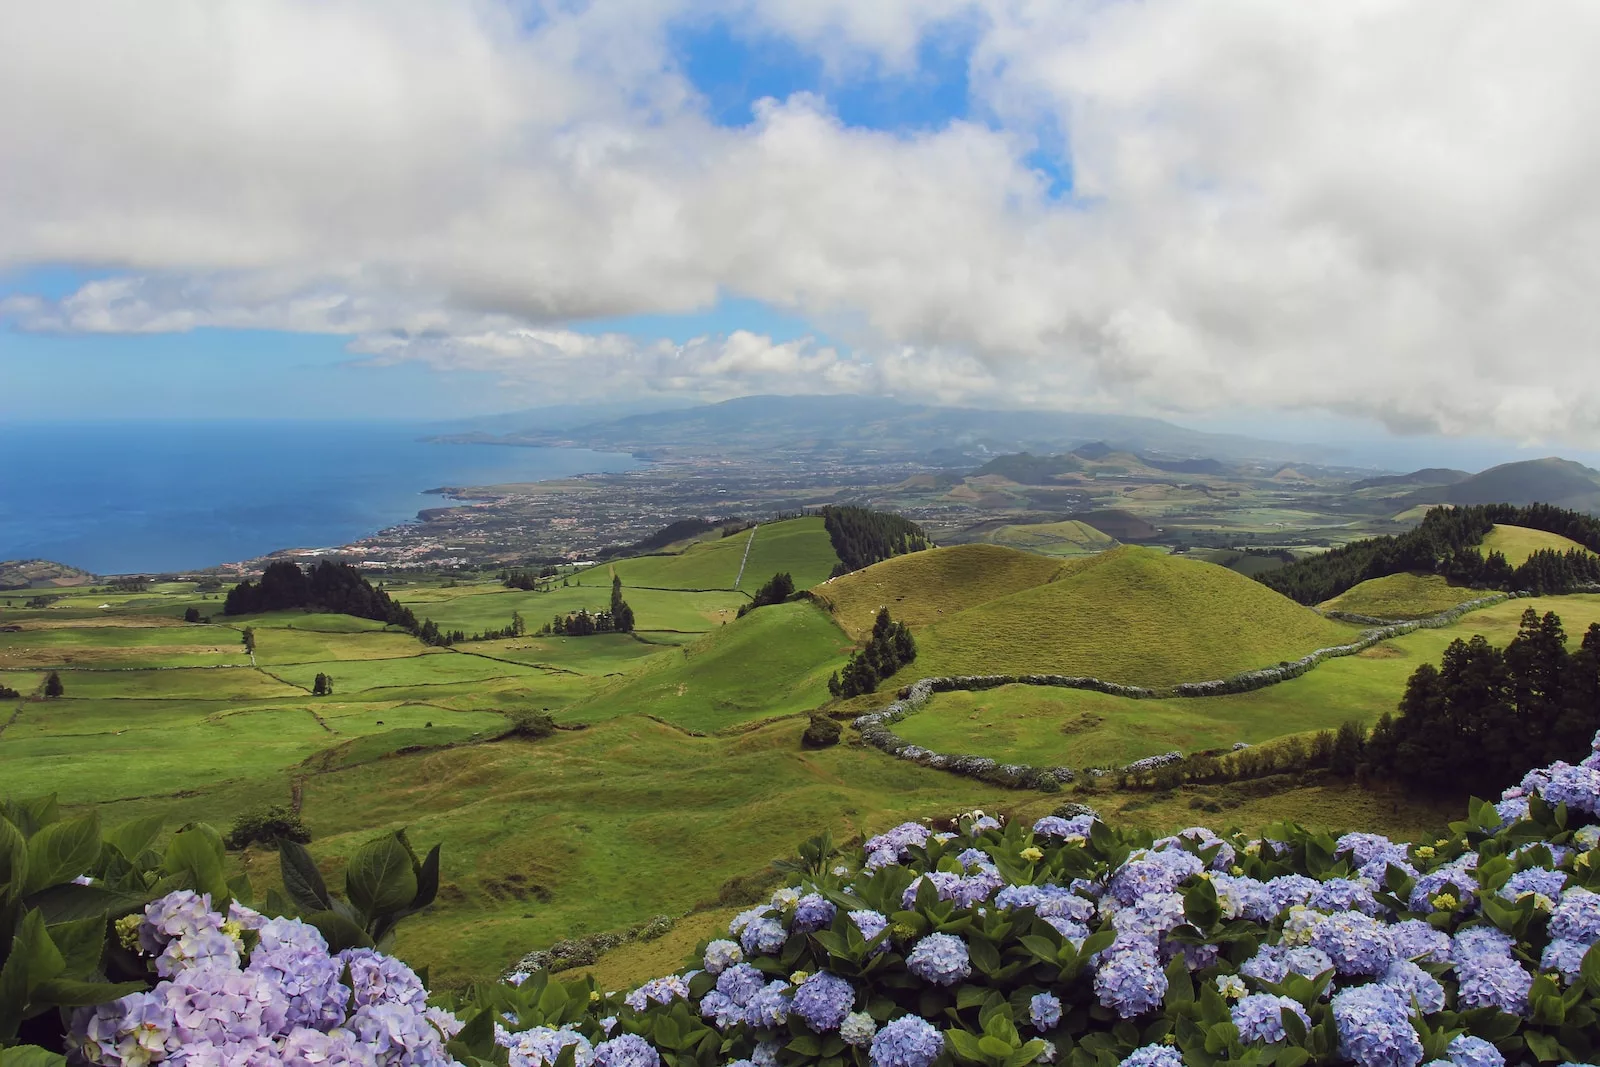 Documentaire A la découverte de Santa Maria aux Açores